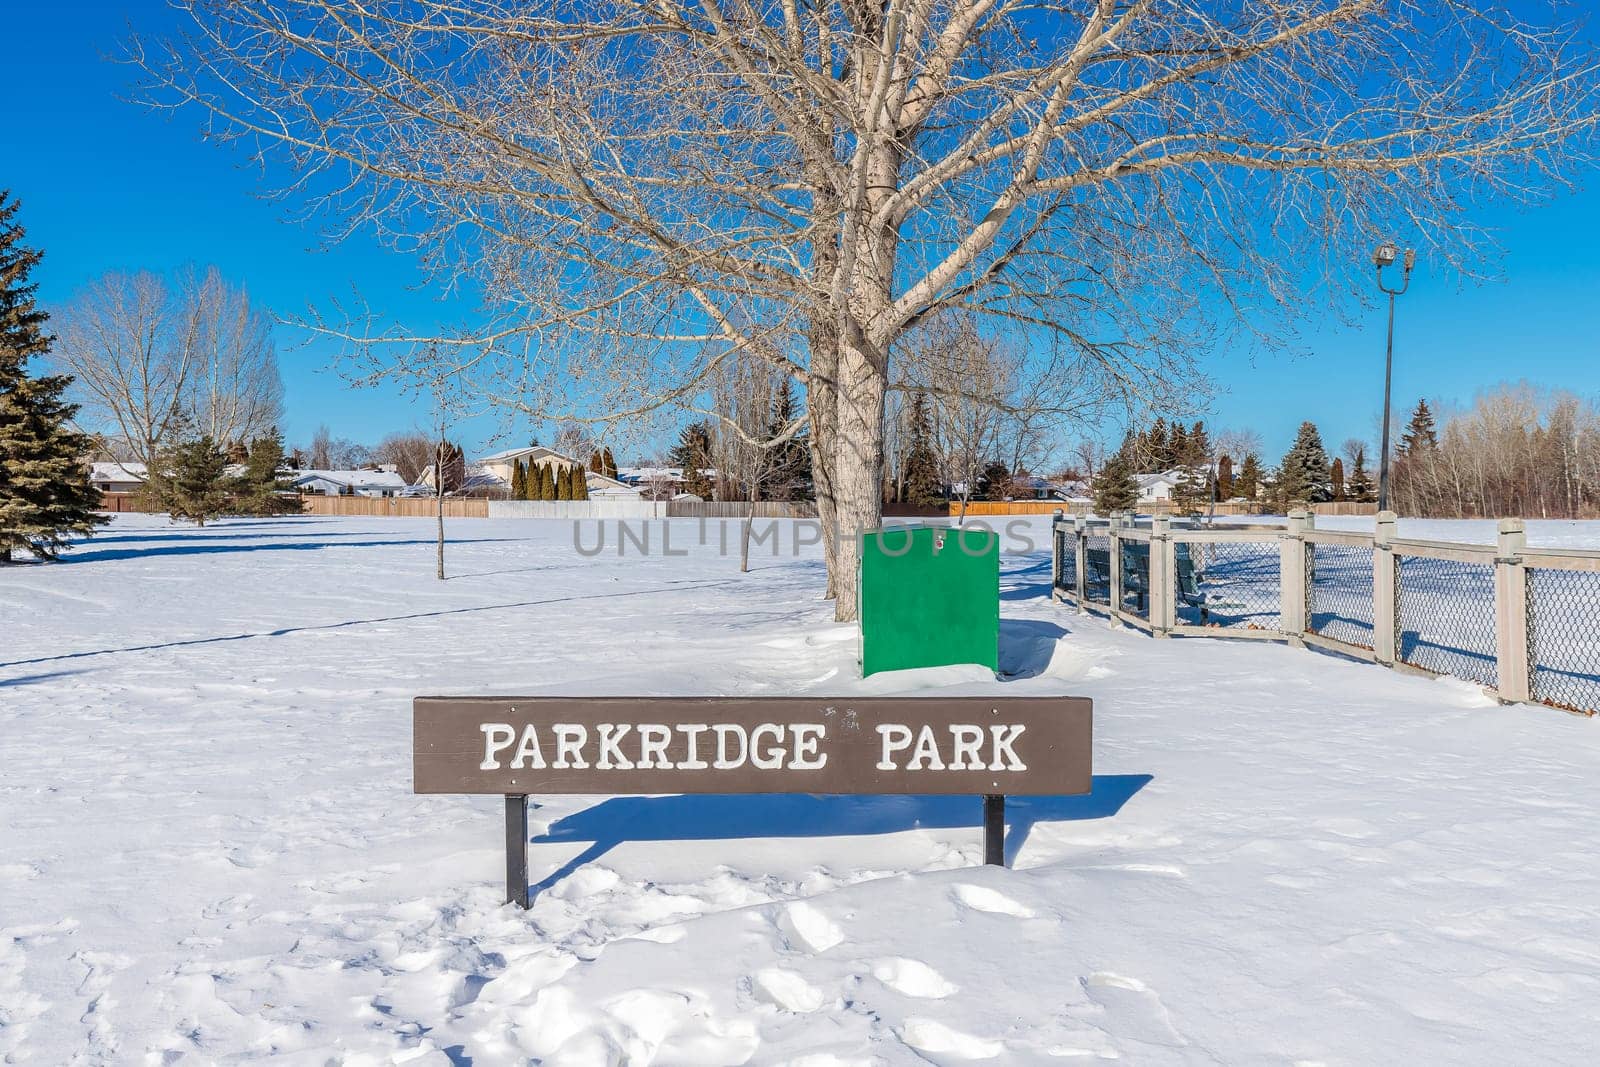 Parkridge Park is located in the Parkridge neighborhood of Saskatoon.